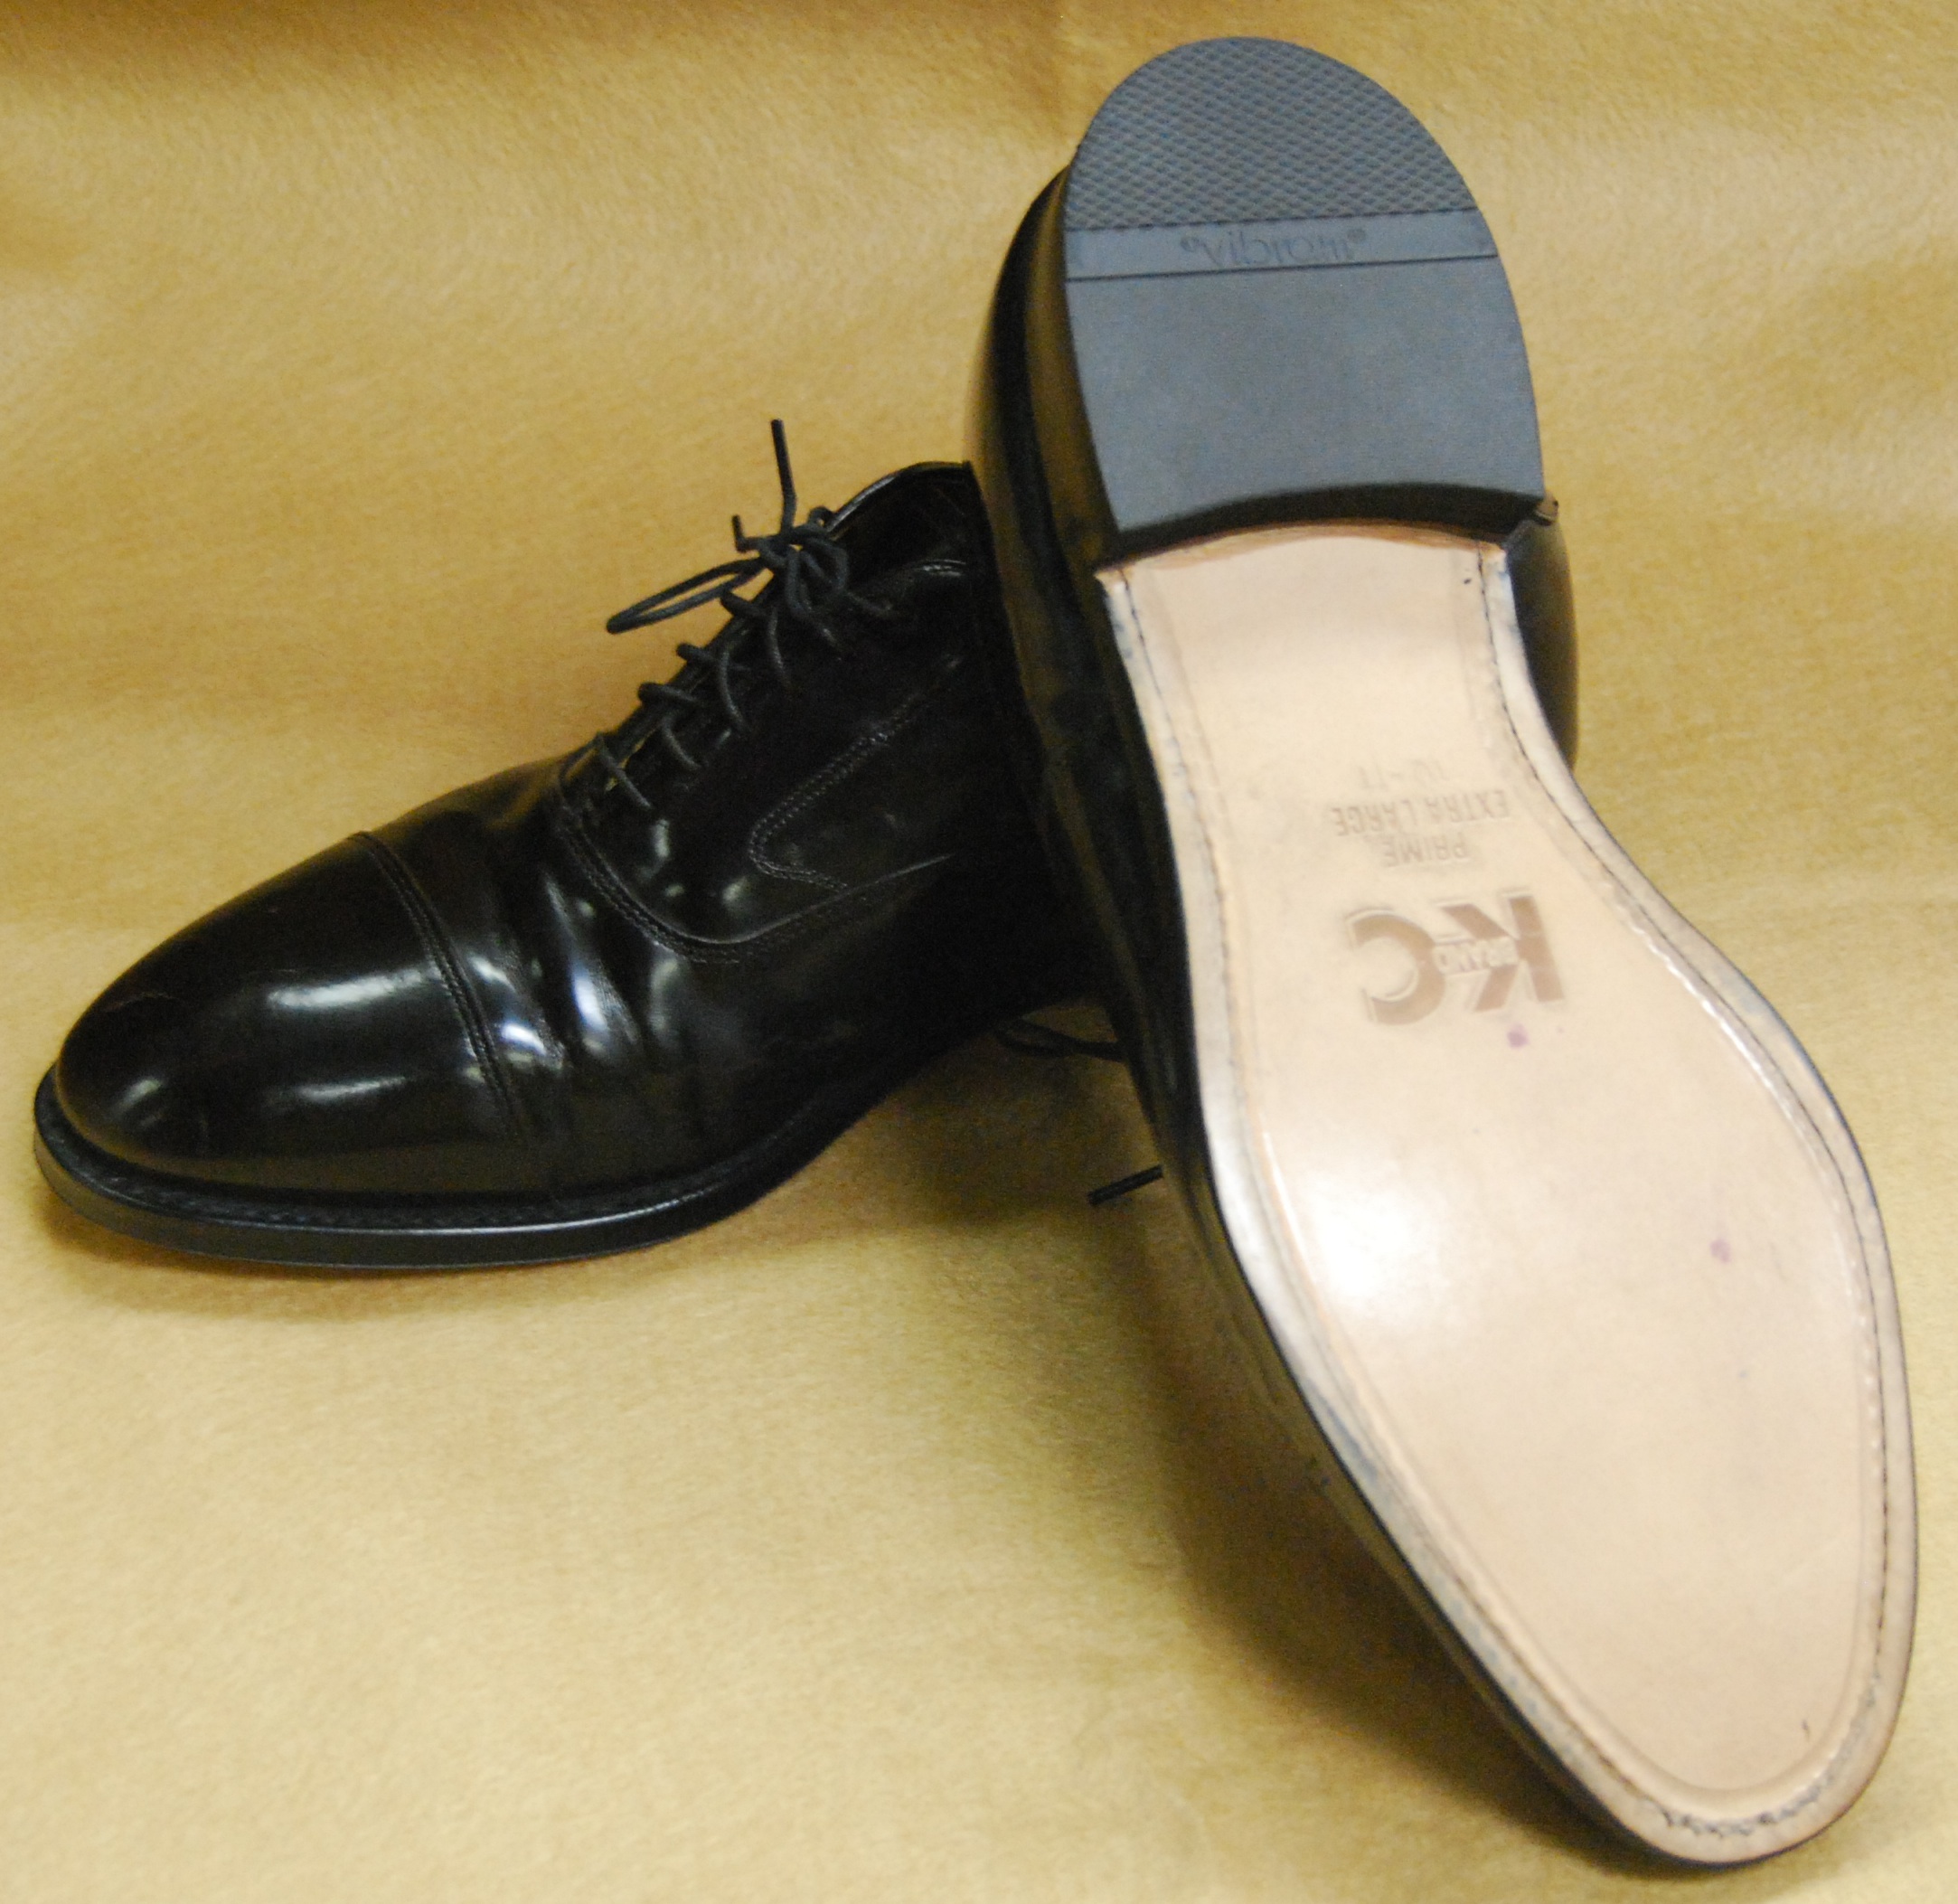 dress shoe sole repair